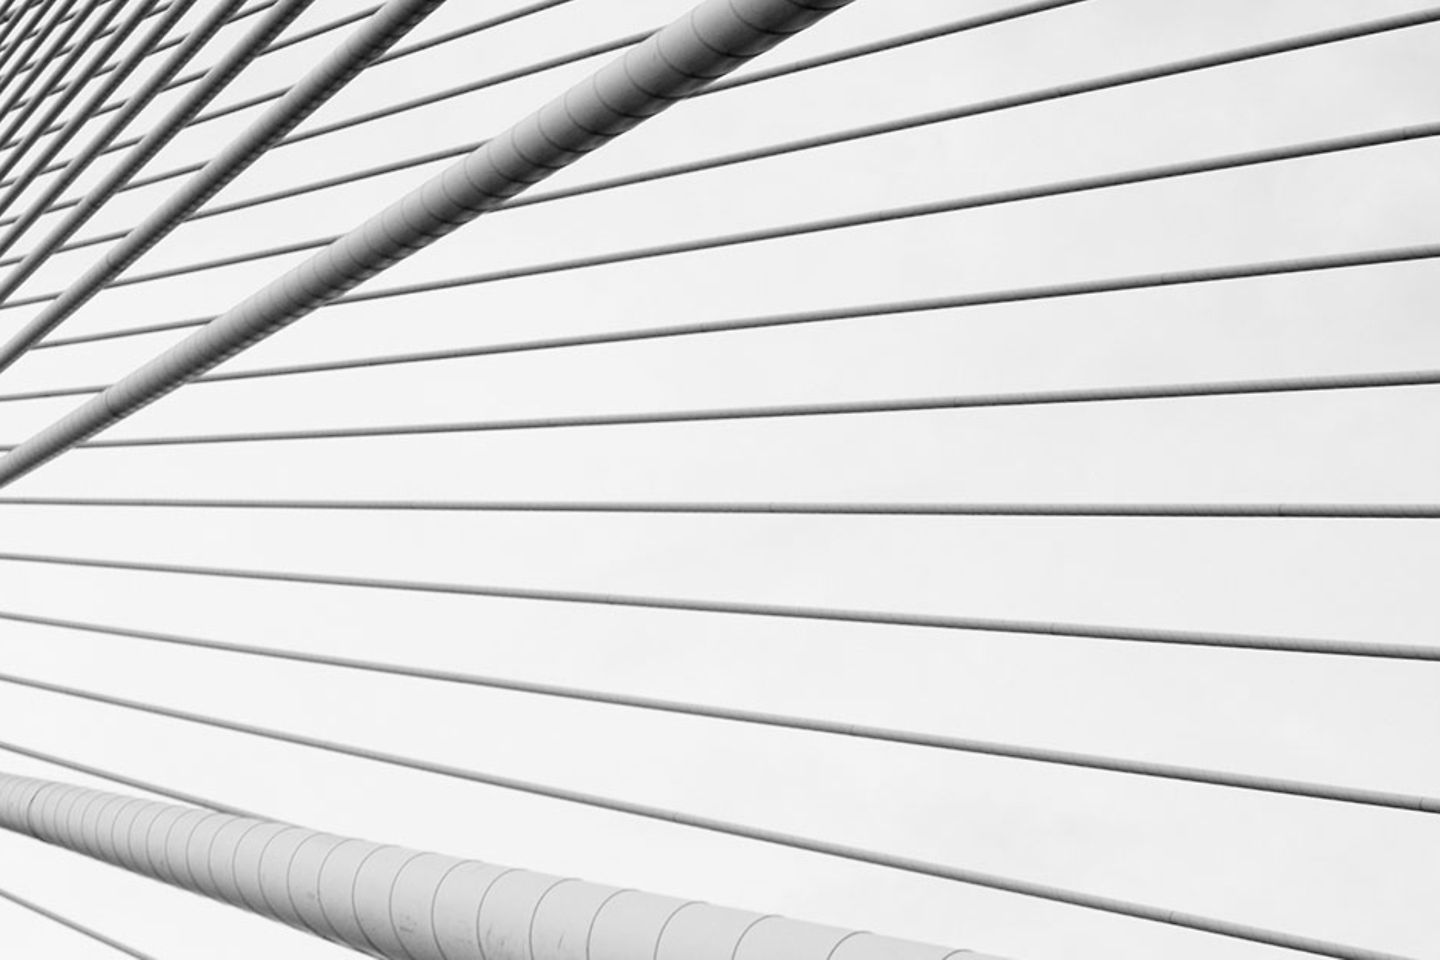 Zwart-wit foto van verschillende, tuikabels van een brug